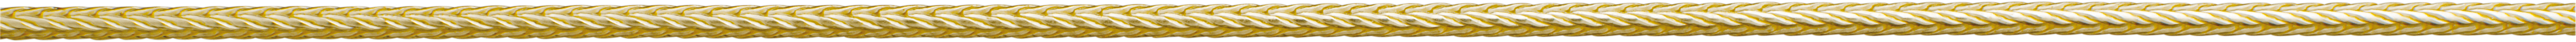 vossestaart ketting goud 750/-gg Ø 1,30mm